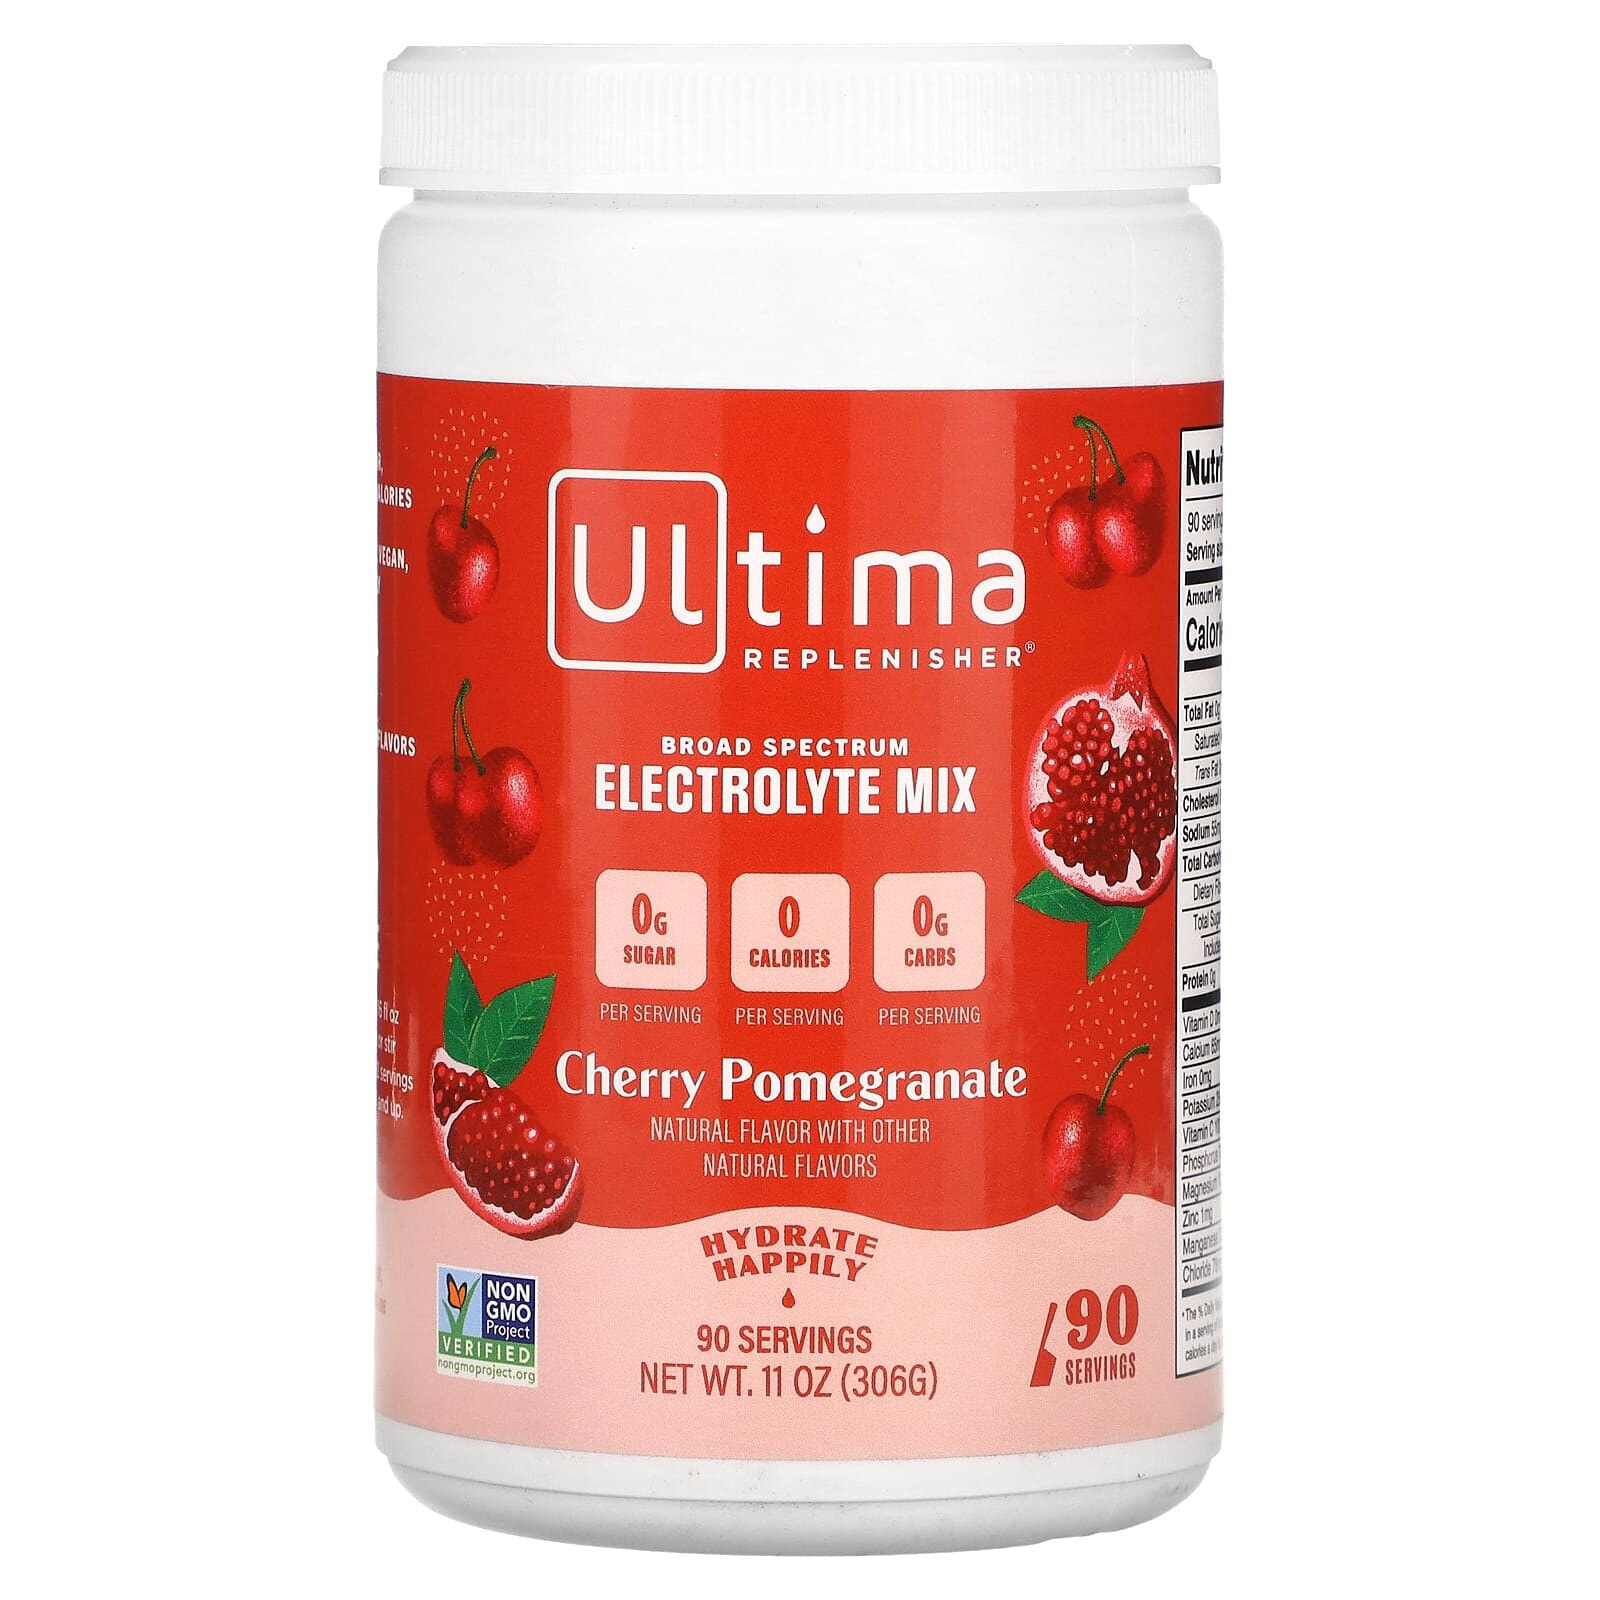 Ултима Хэлс Продуктс, Ultima Replenisher Electrolyte Powder, Cherry Pomegranate, 90 servings Net Wt 10.8 oz (306 g) (Товар снят с продажи) 